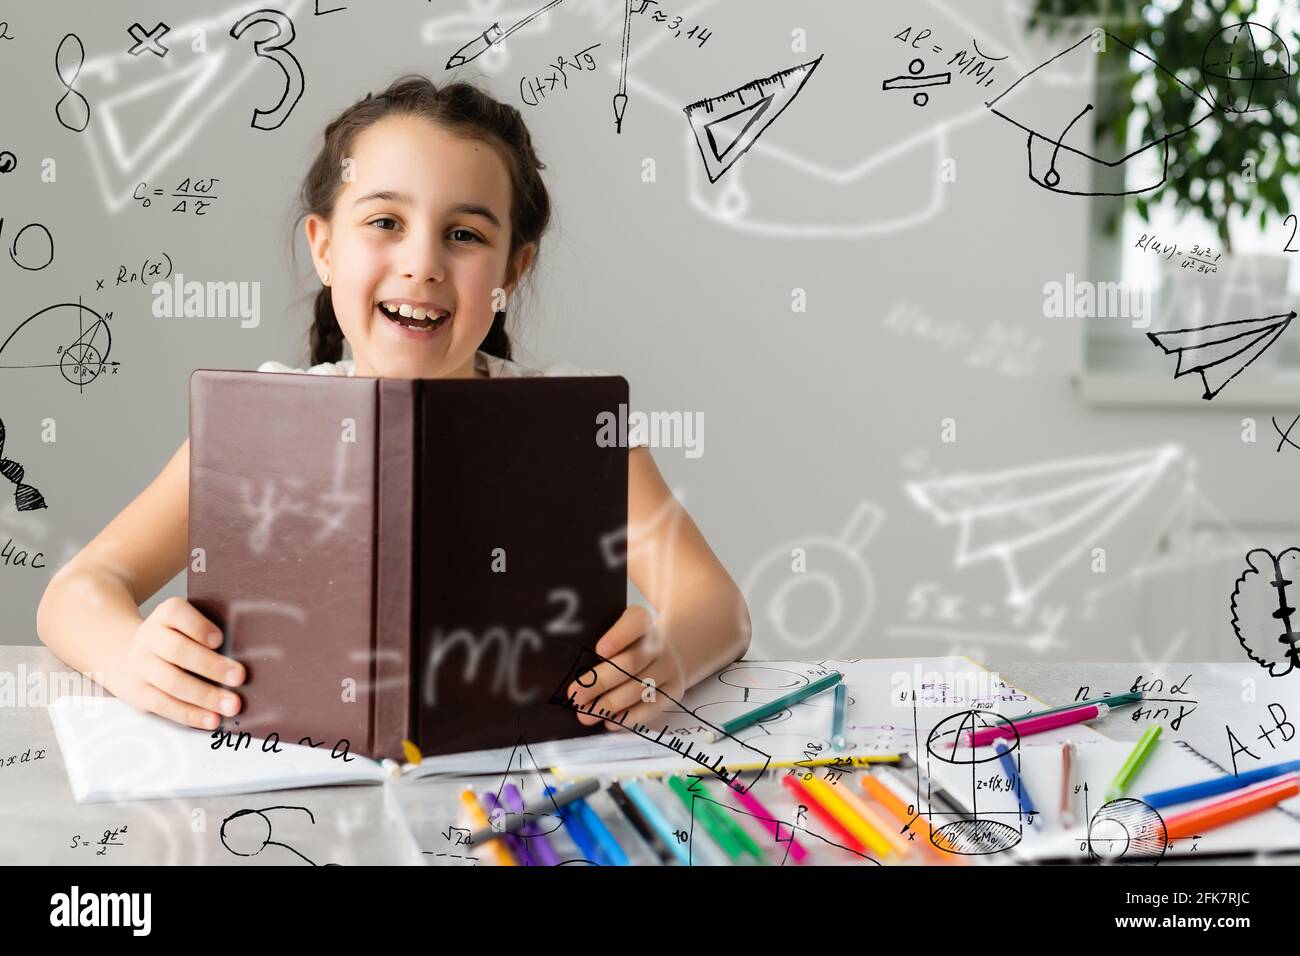 Schöne niedliche kleine Genie Mädchen mit Büchern und mathematischen  Formeln, Probleme um sie herum Stockfotografie - Alamy